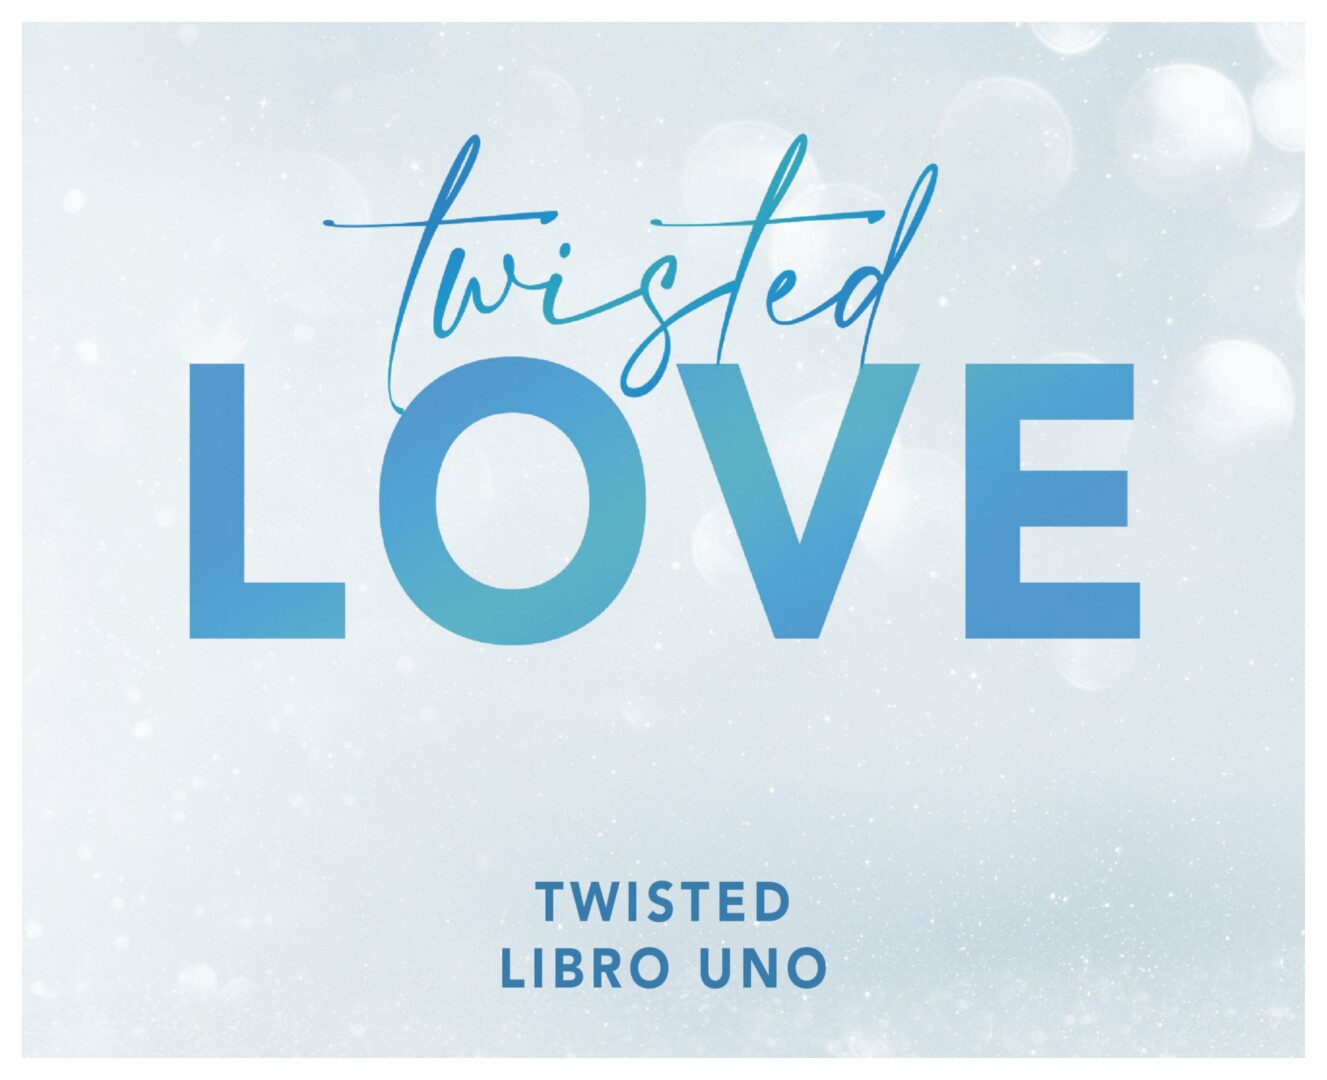 Libro: Twisted Love. Autor(a): Ana - Libros, Locos & Más